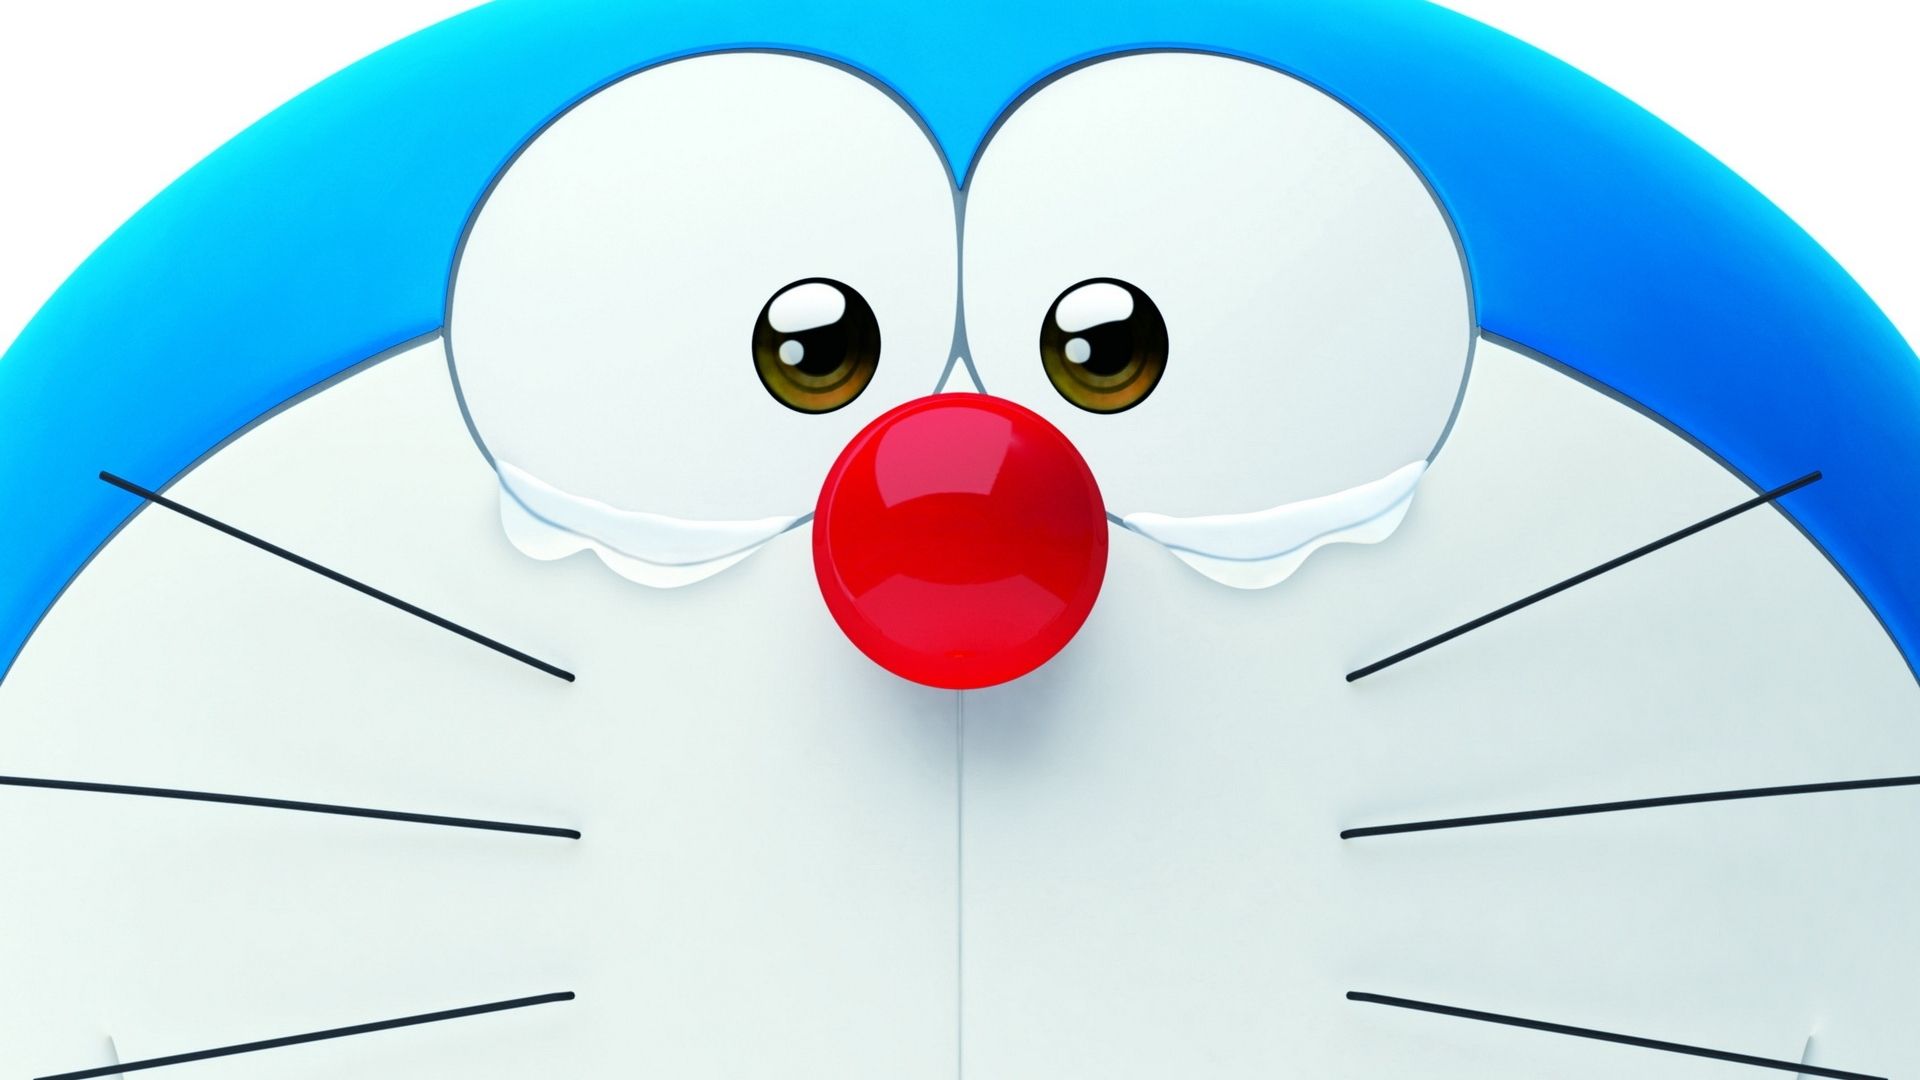 Hình ảnh Doraemon đang khóc